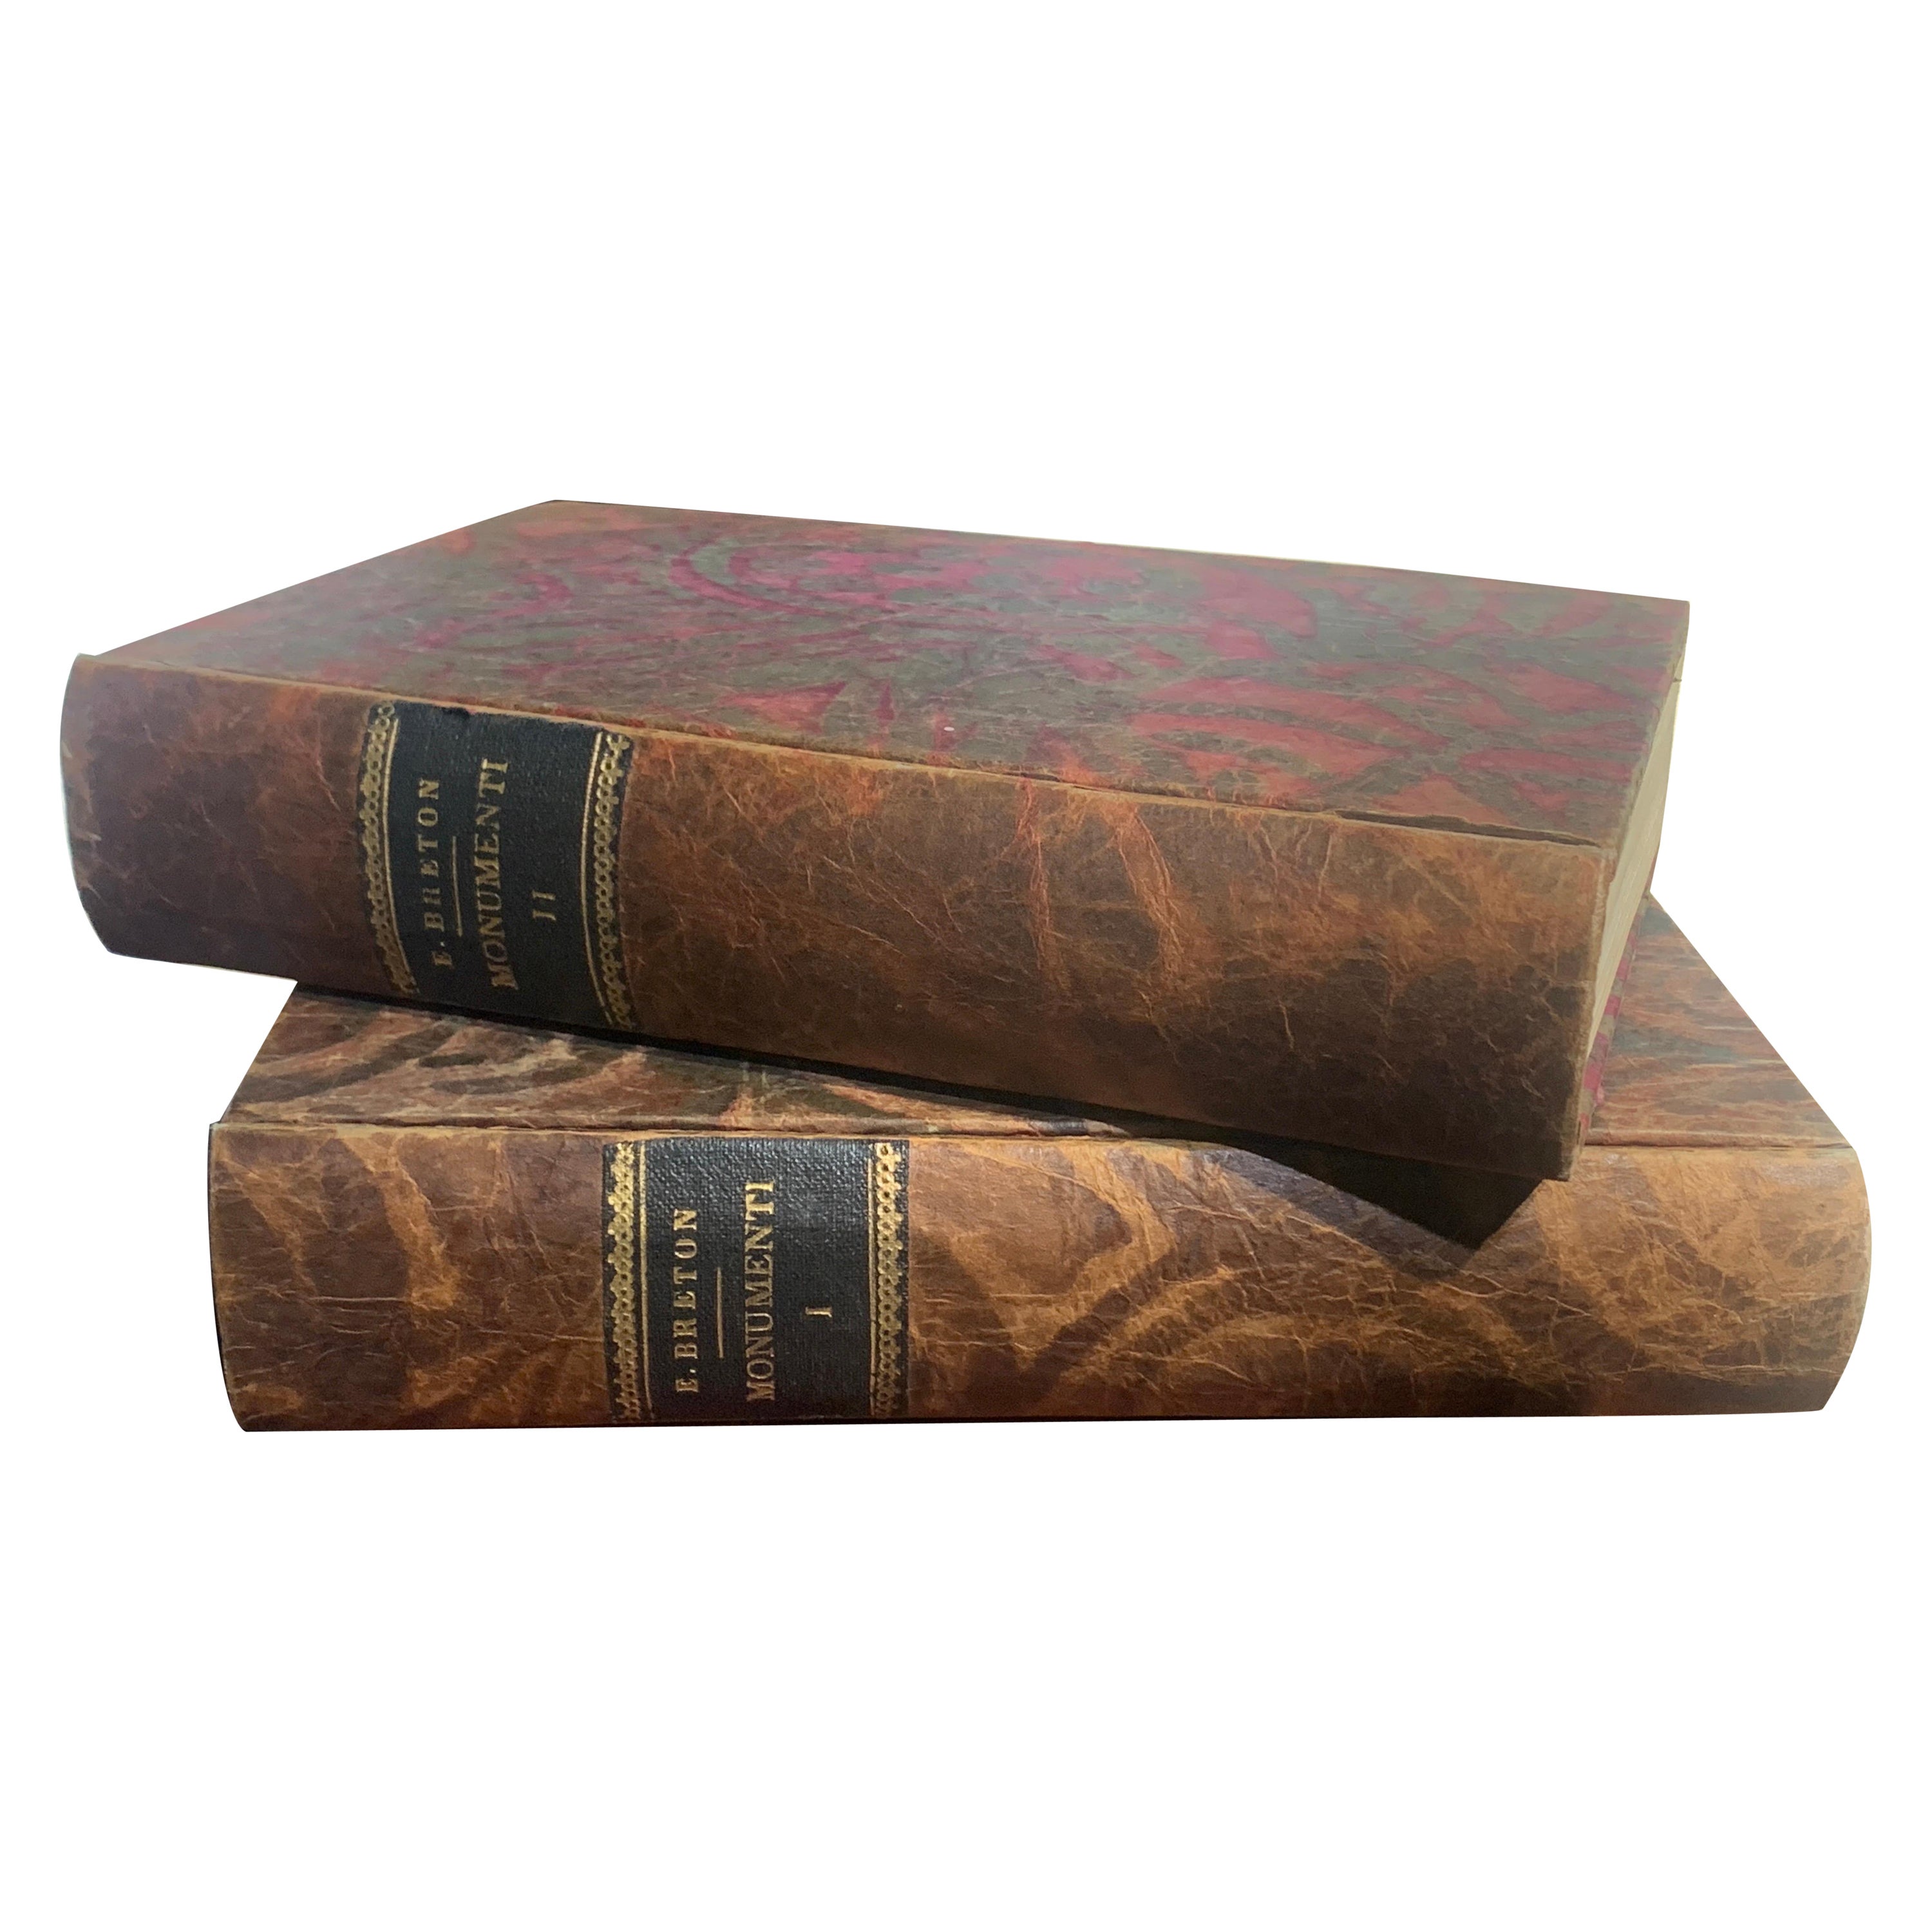 Zwei italienische Bände Monumenti di Tutti i Popoli des 19. Jahrhunderts von Ernest Breton